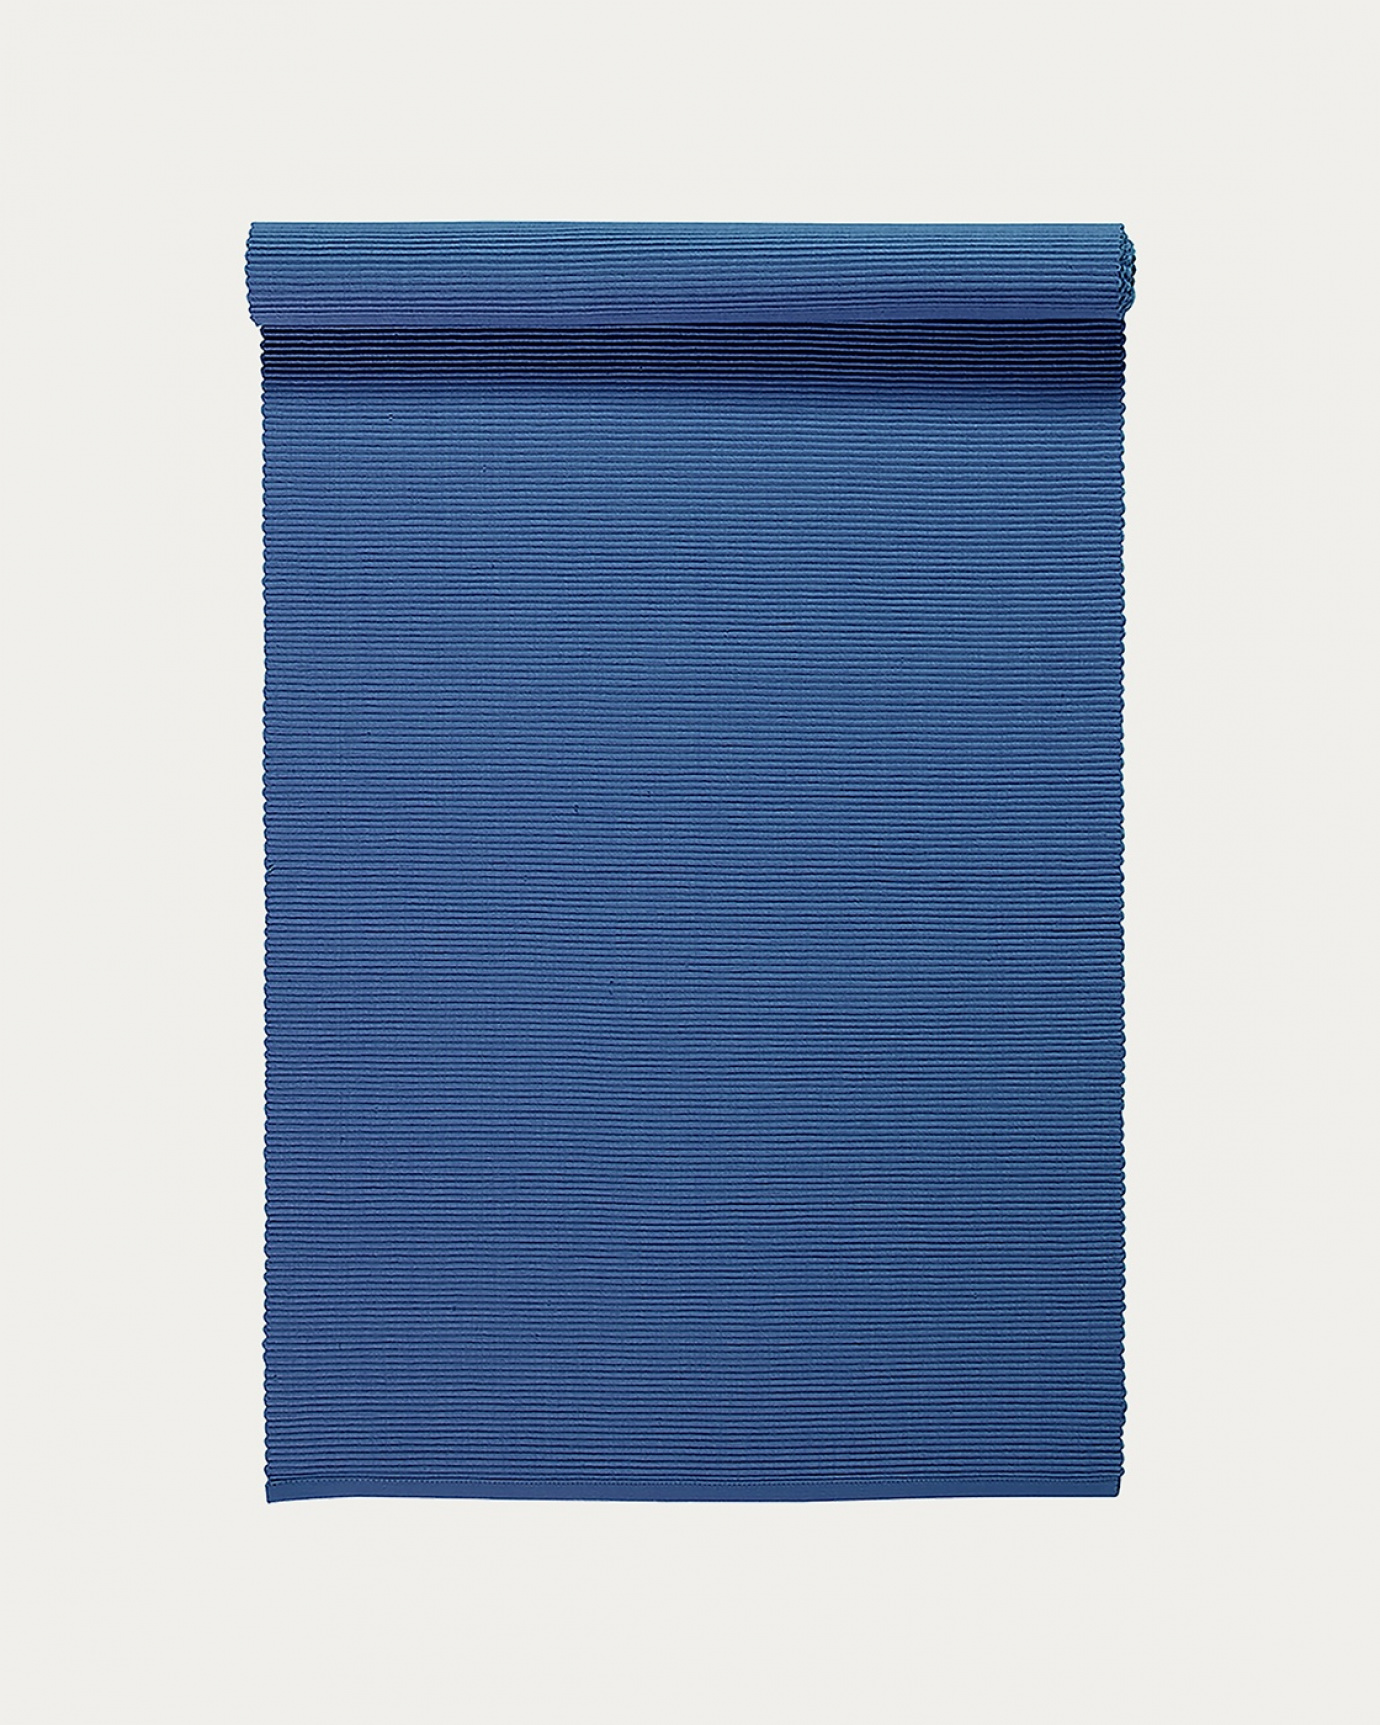 Immagine prodotto blu marino chiaro runner UNI in morbido cotone a costine di qualità di LINUM DESIGN. Dimensioni 45x150 cm.